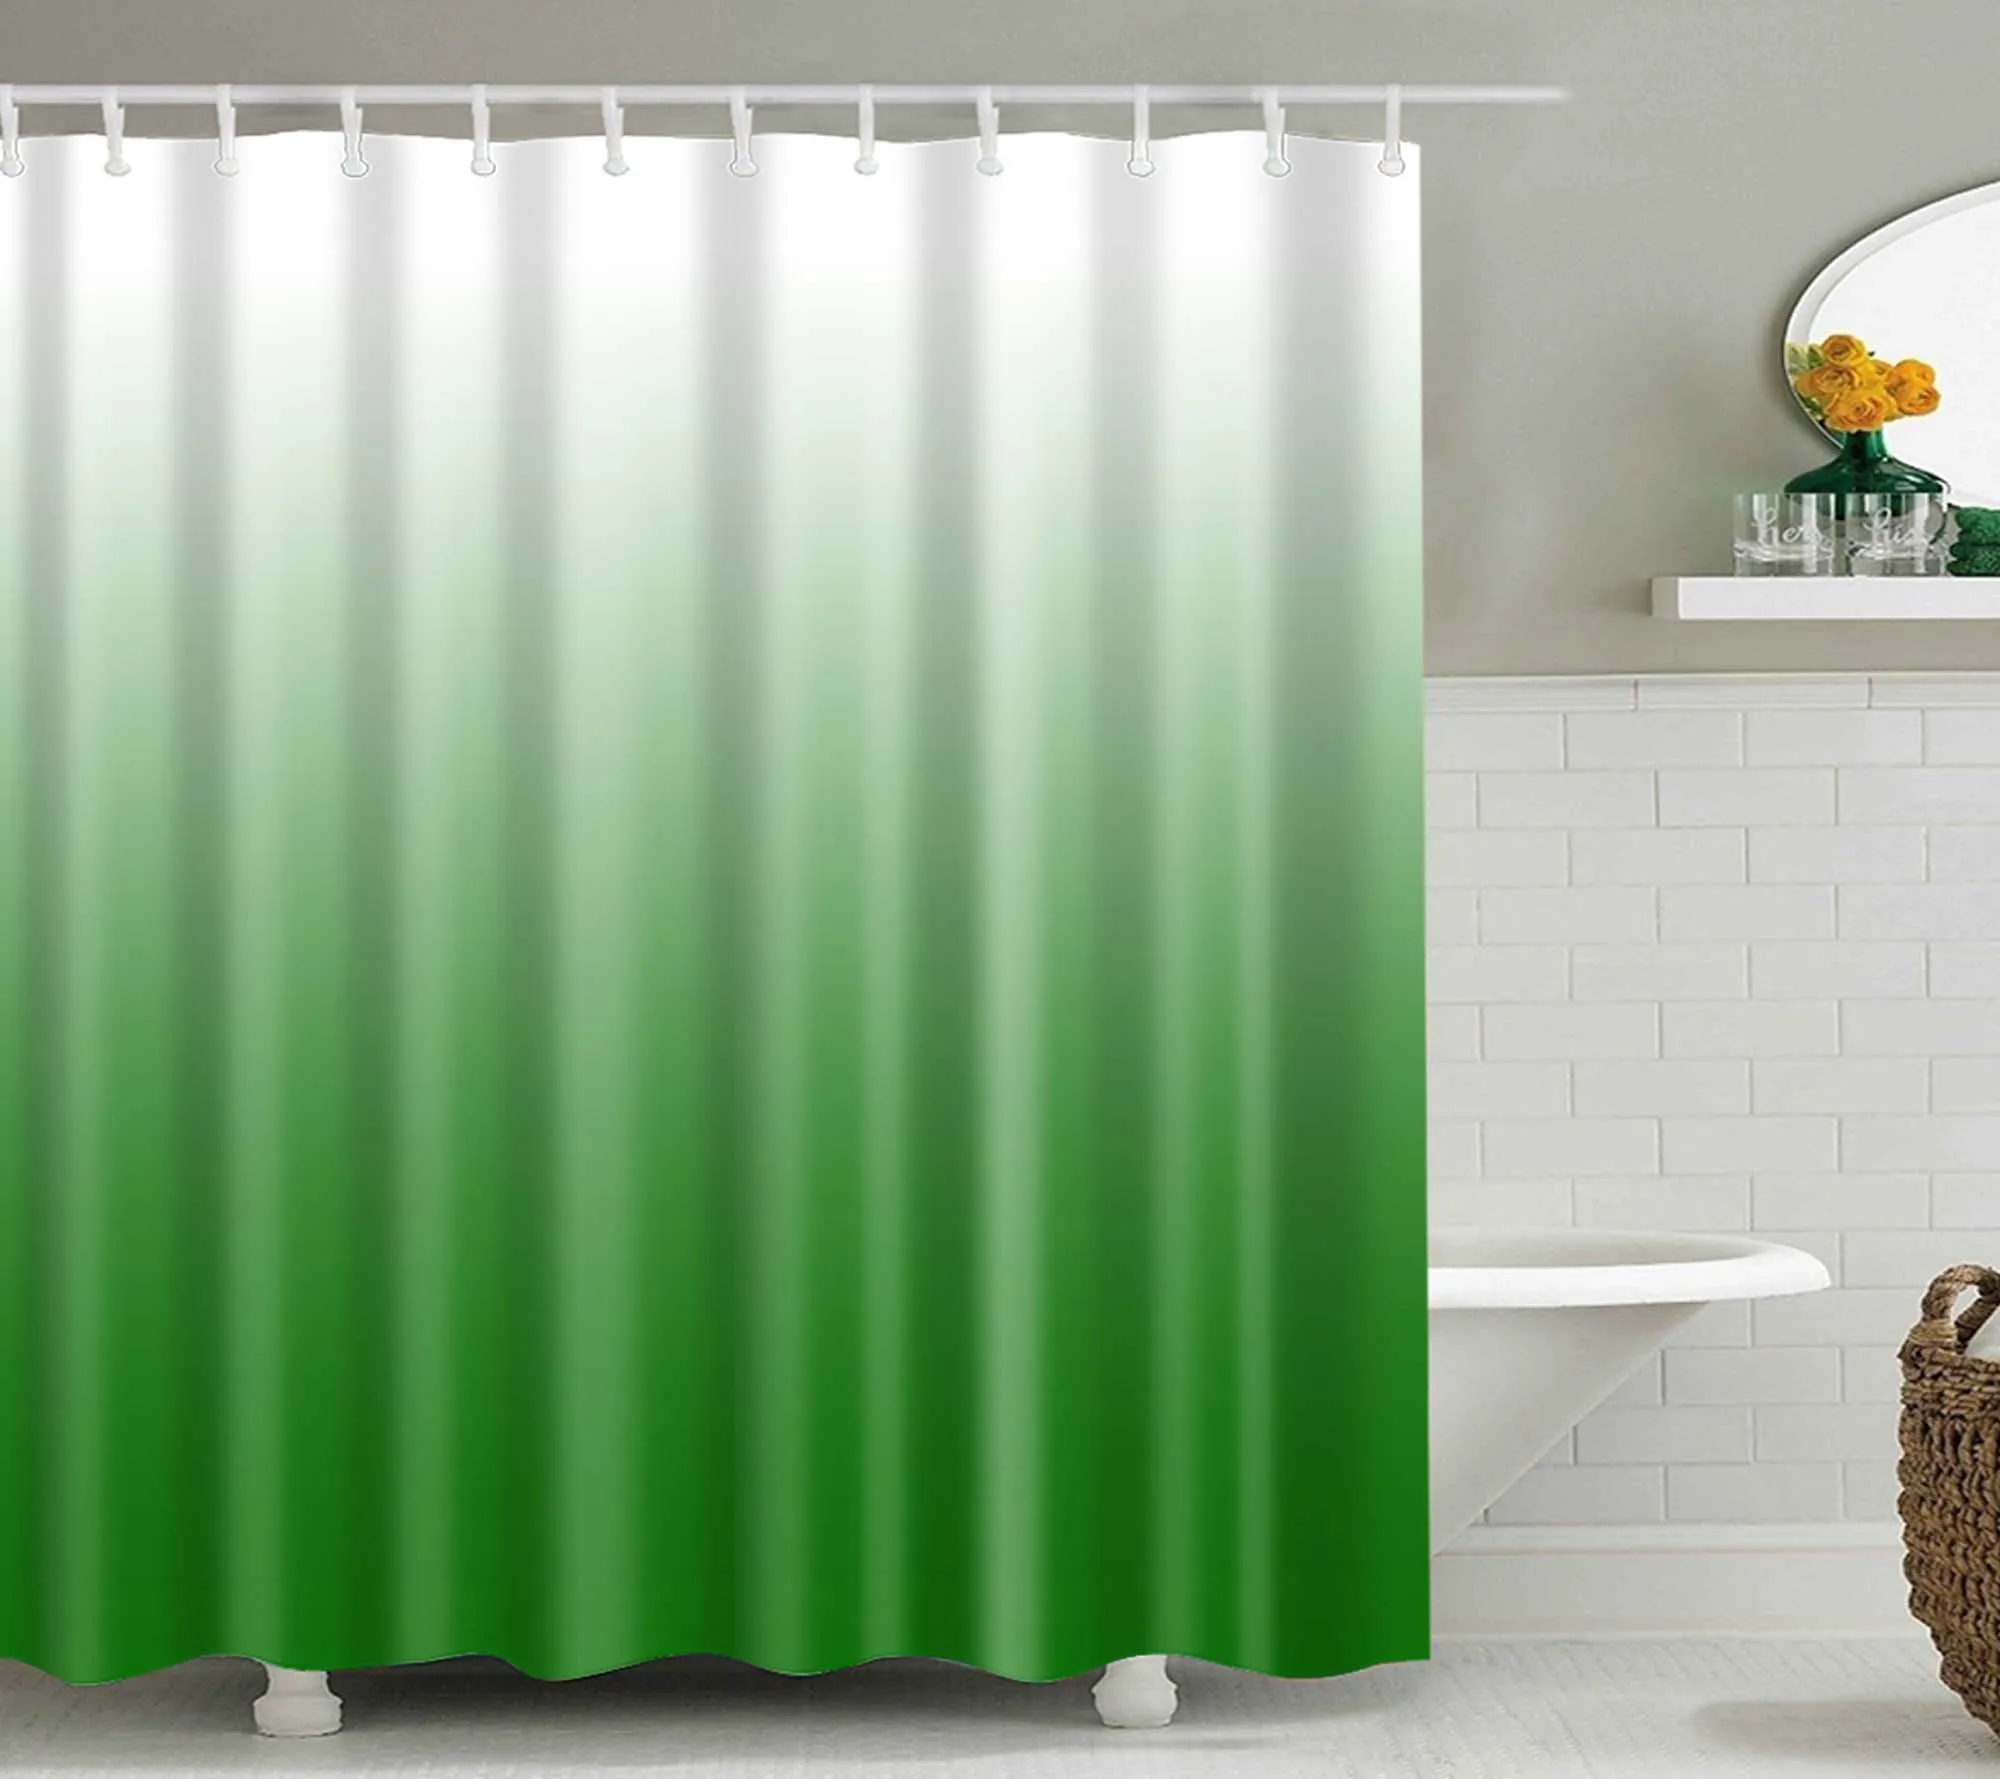 Градиент цвета занавески для душа полиэстер ткань экологически чистый водонепроницаемый дизайн частный ванная комната подарок с крюком B1050 - Цвет: C0511